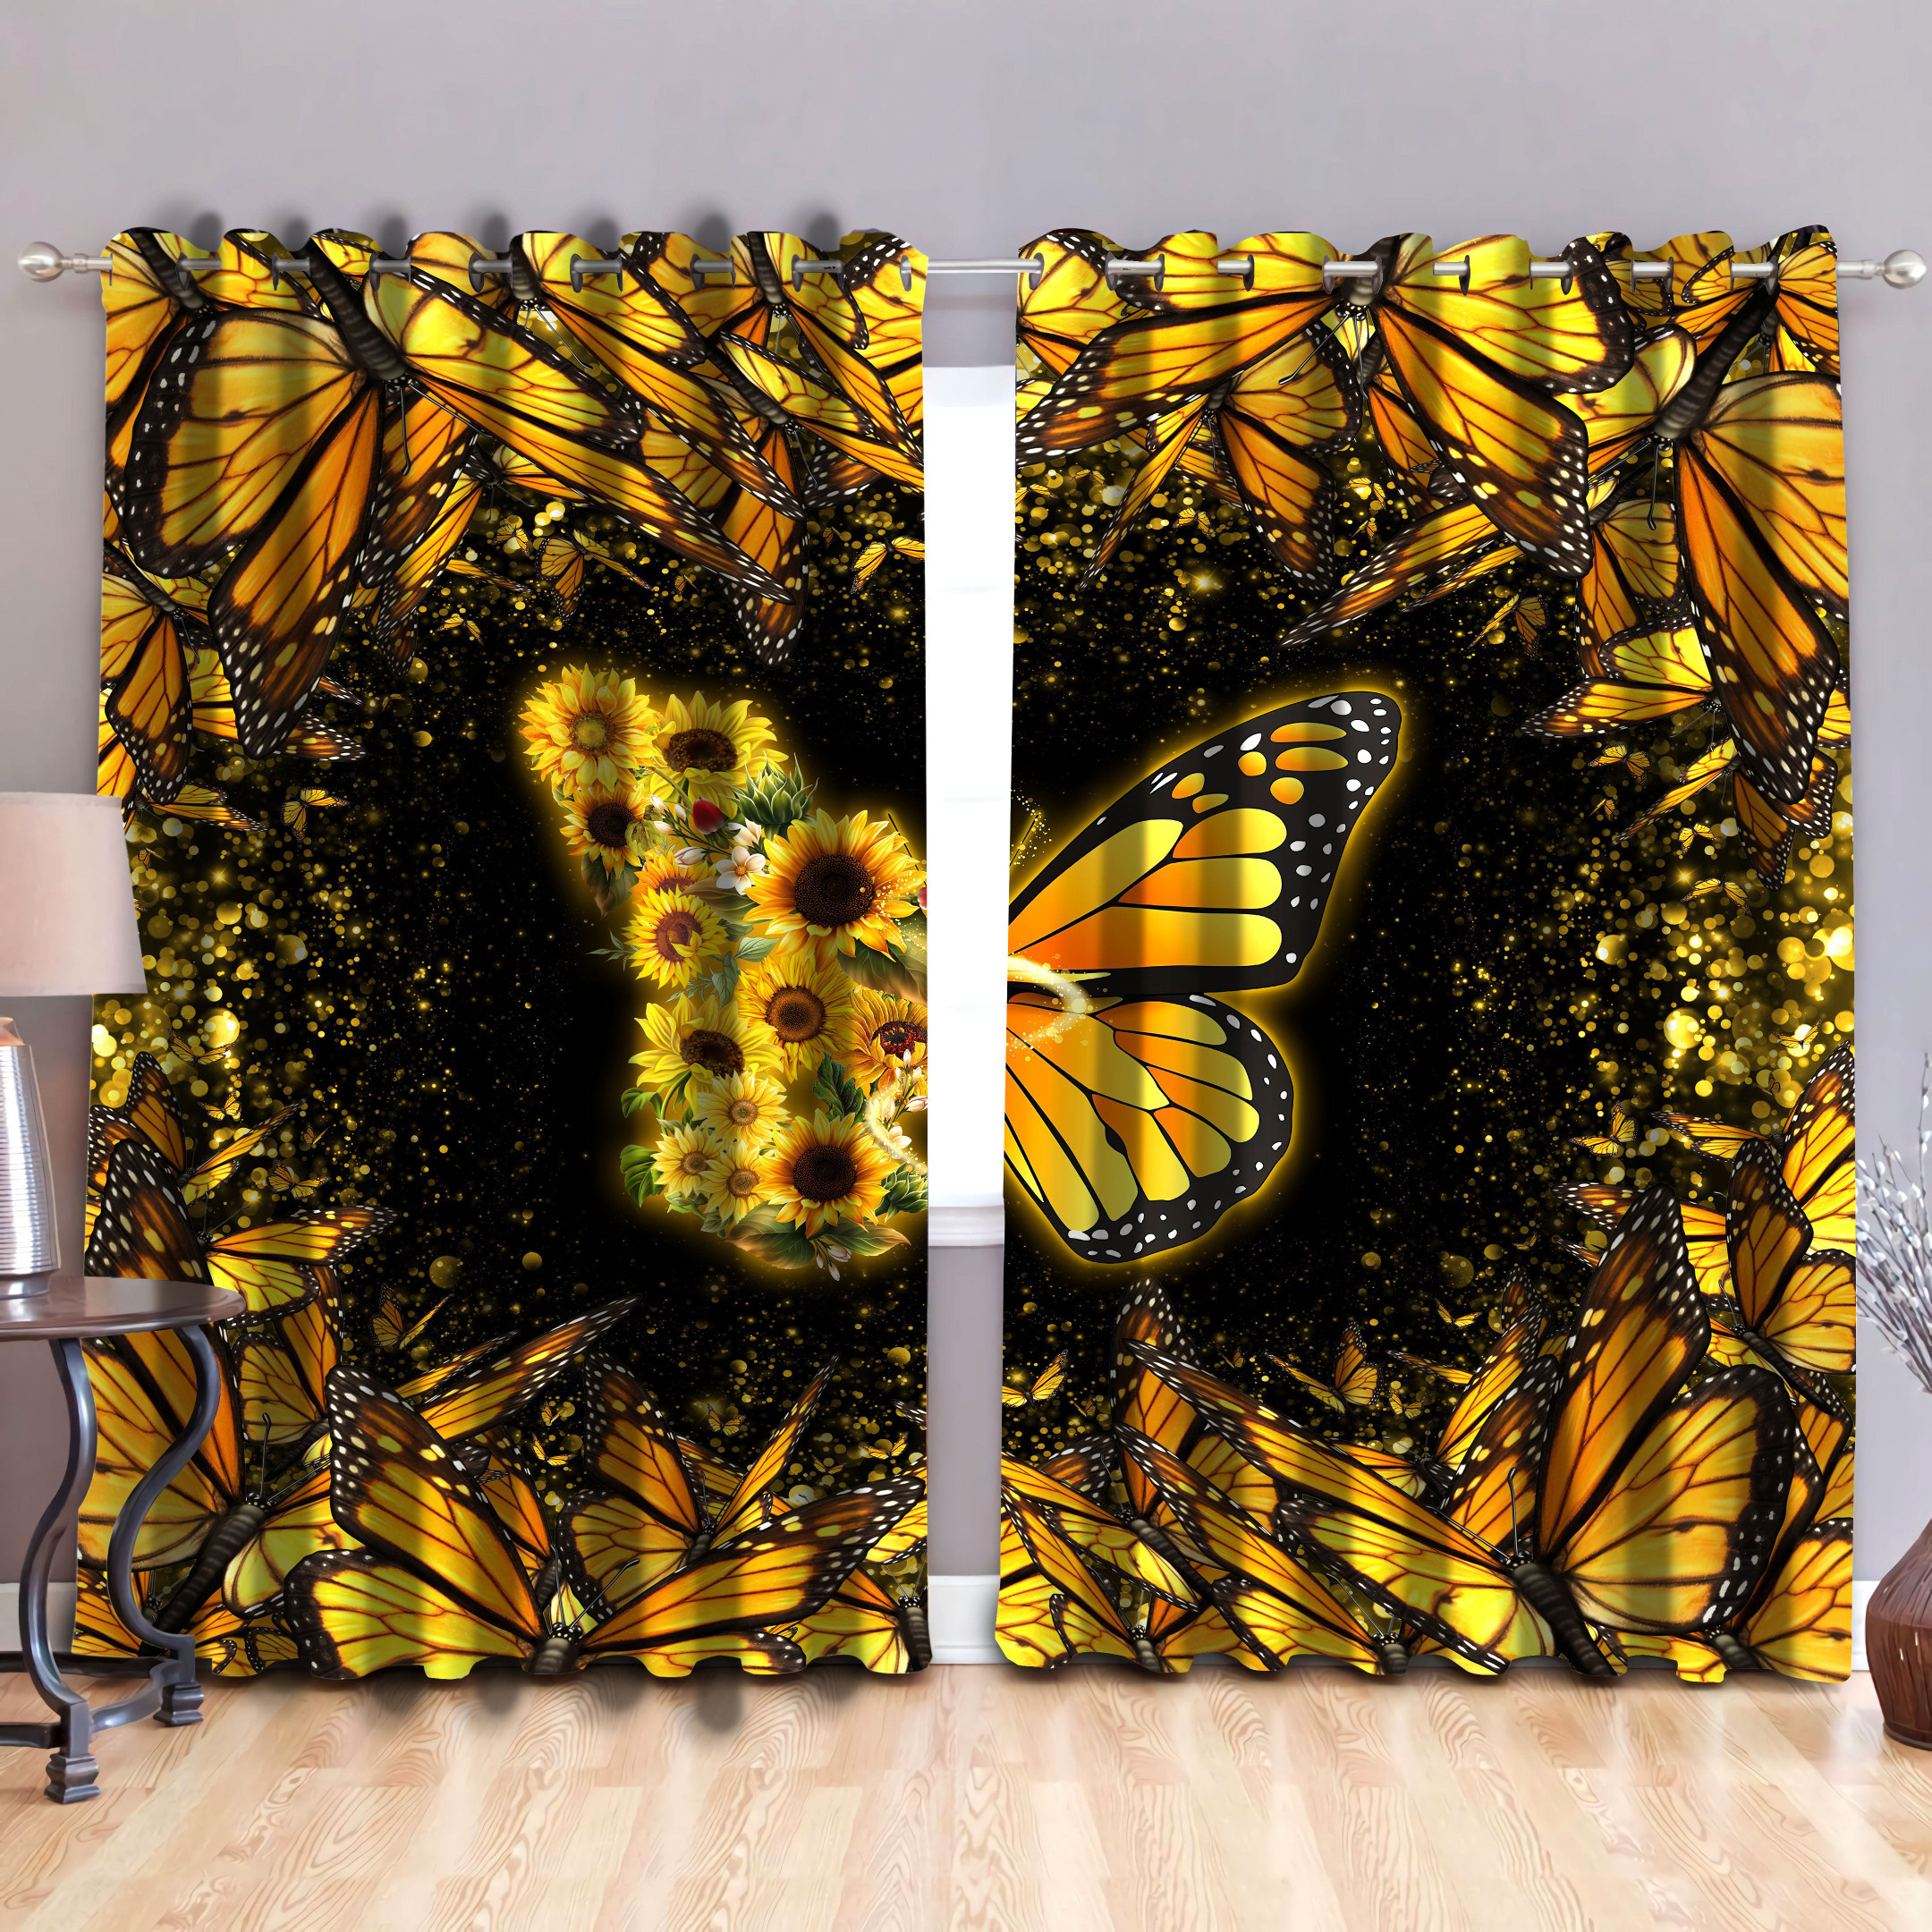 Tmarc Tee Butterfly curtain